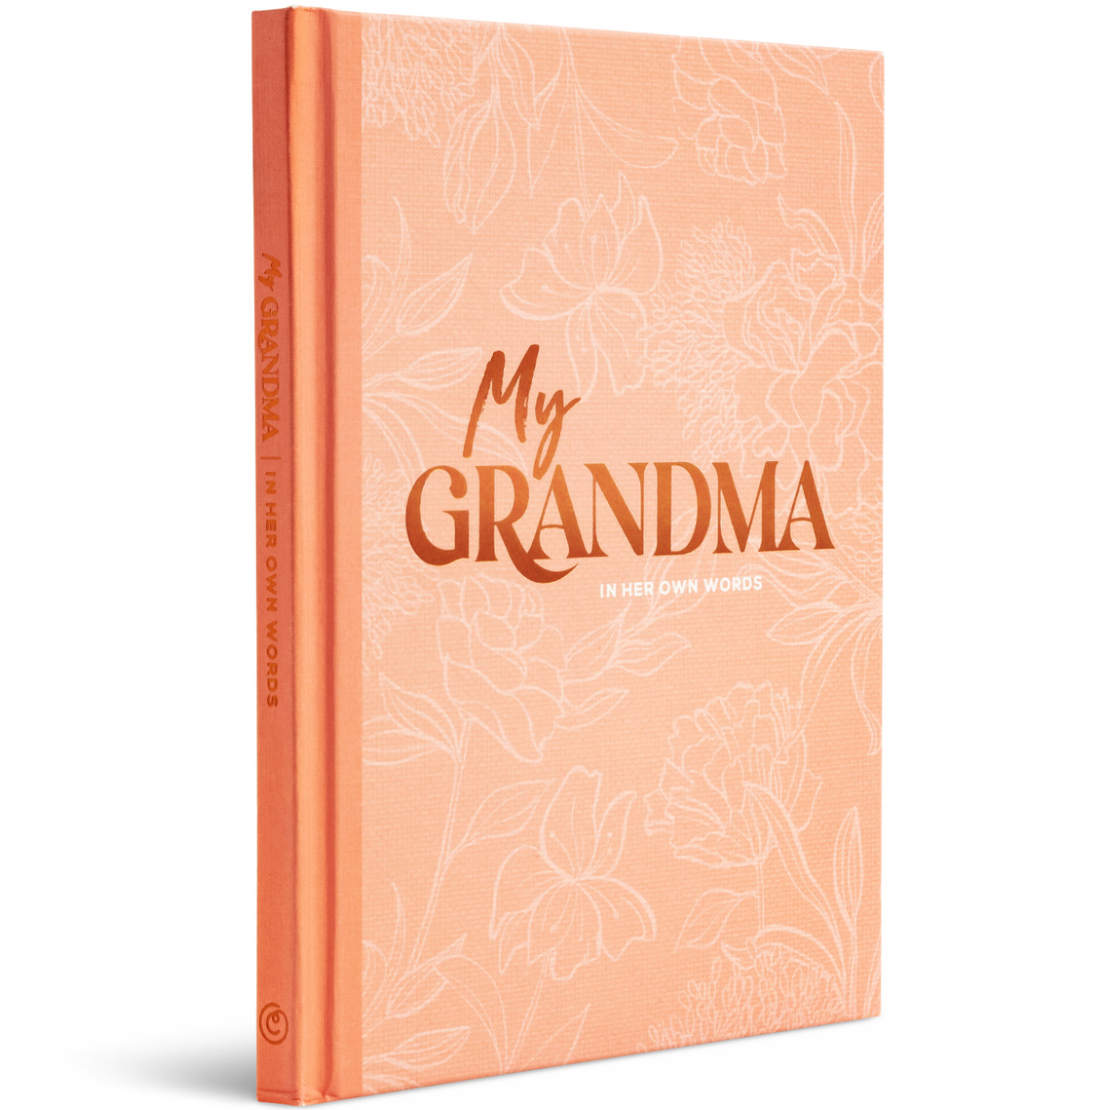 MY GRANDMA – IN HER OWN WORDS